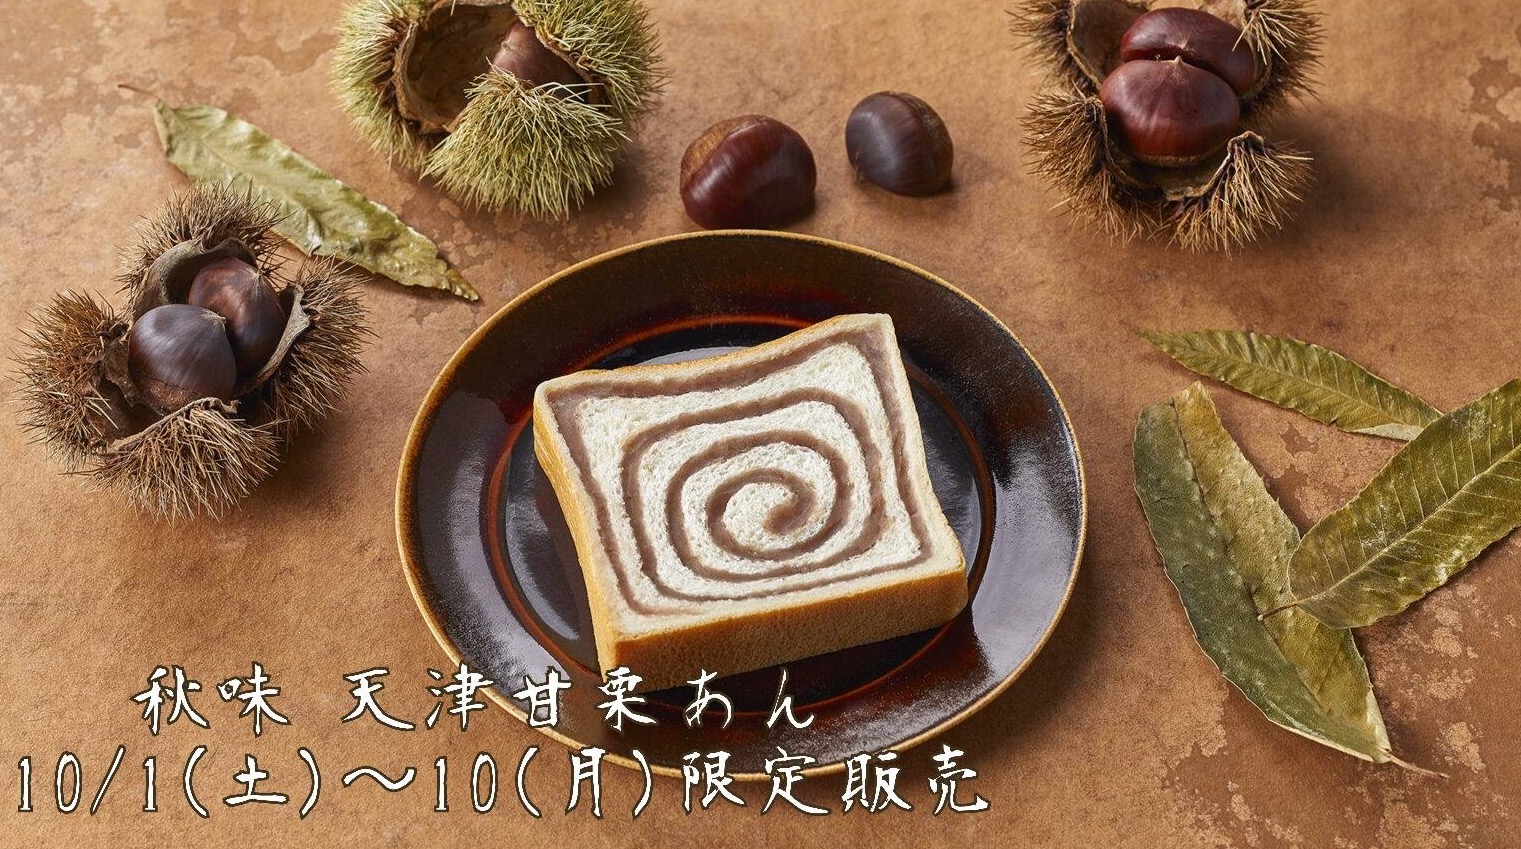 比10/1是月初面包"秋天味道天津糖炒栗子馅儿"销售开始！